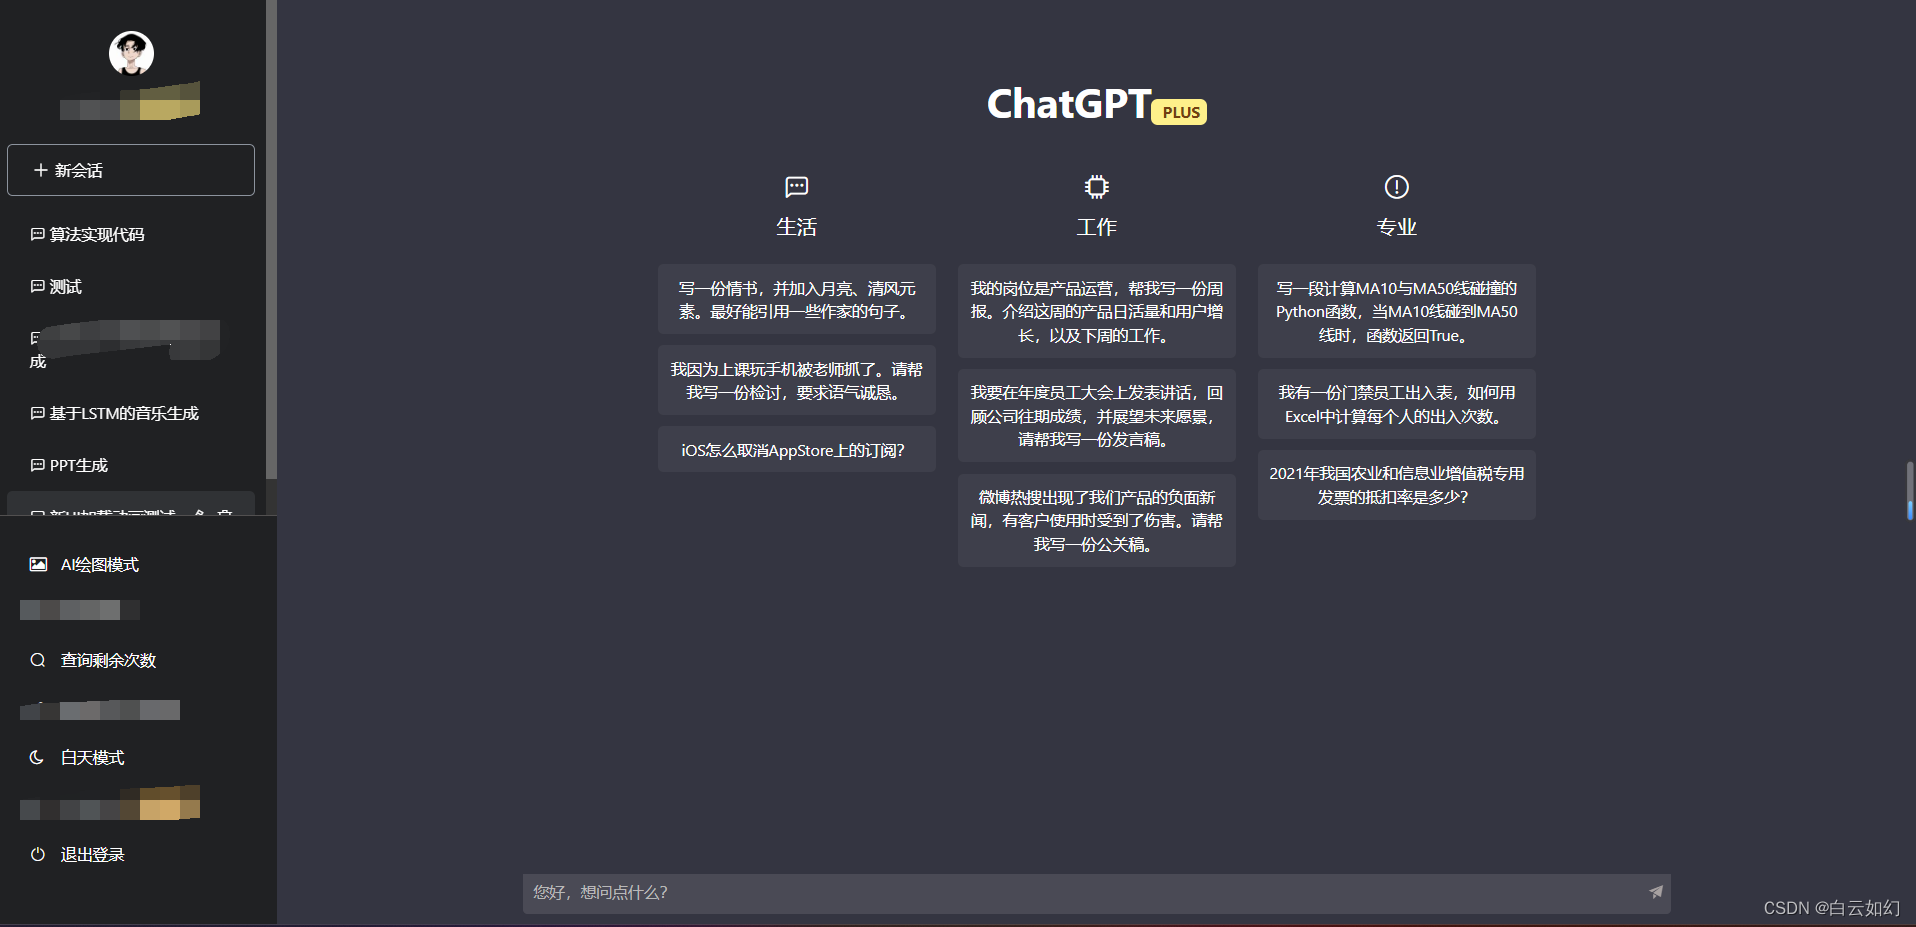 La última versión operativa del código fuente del sitio web de ChatGPT